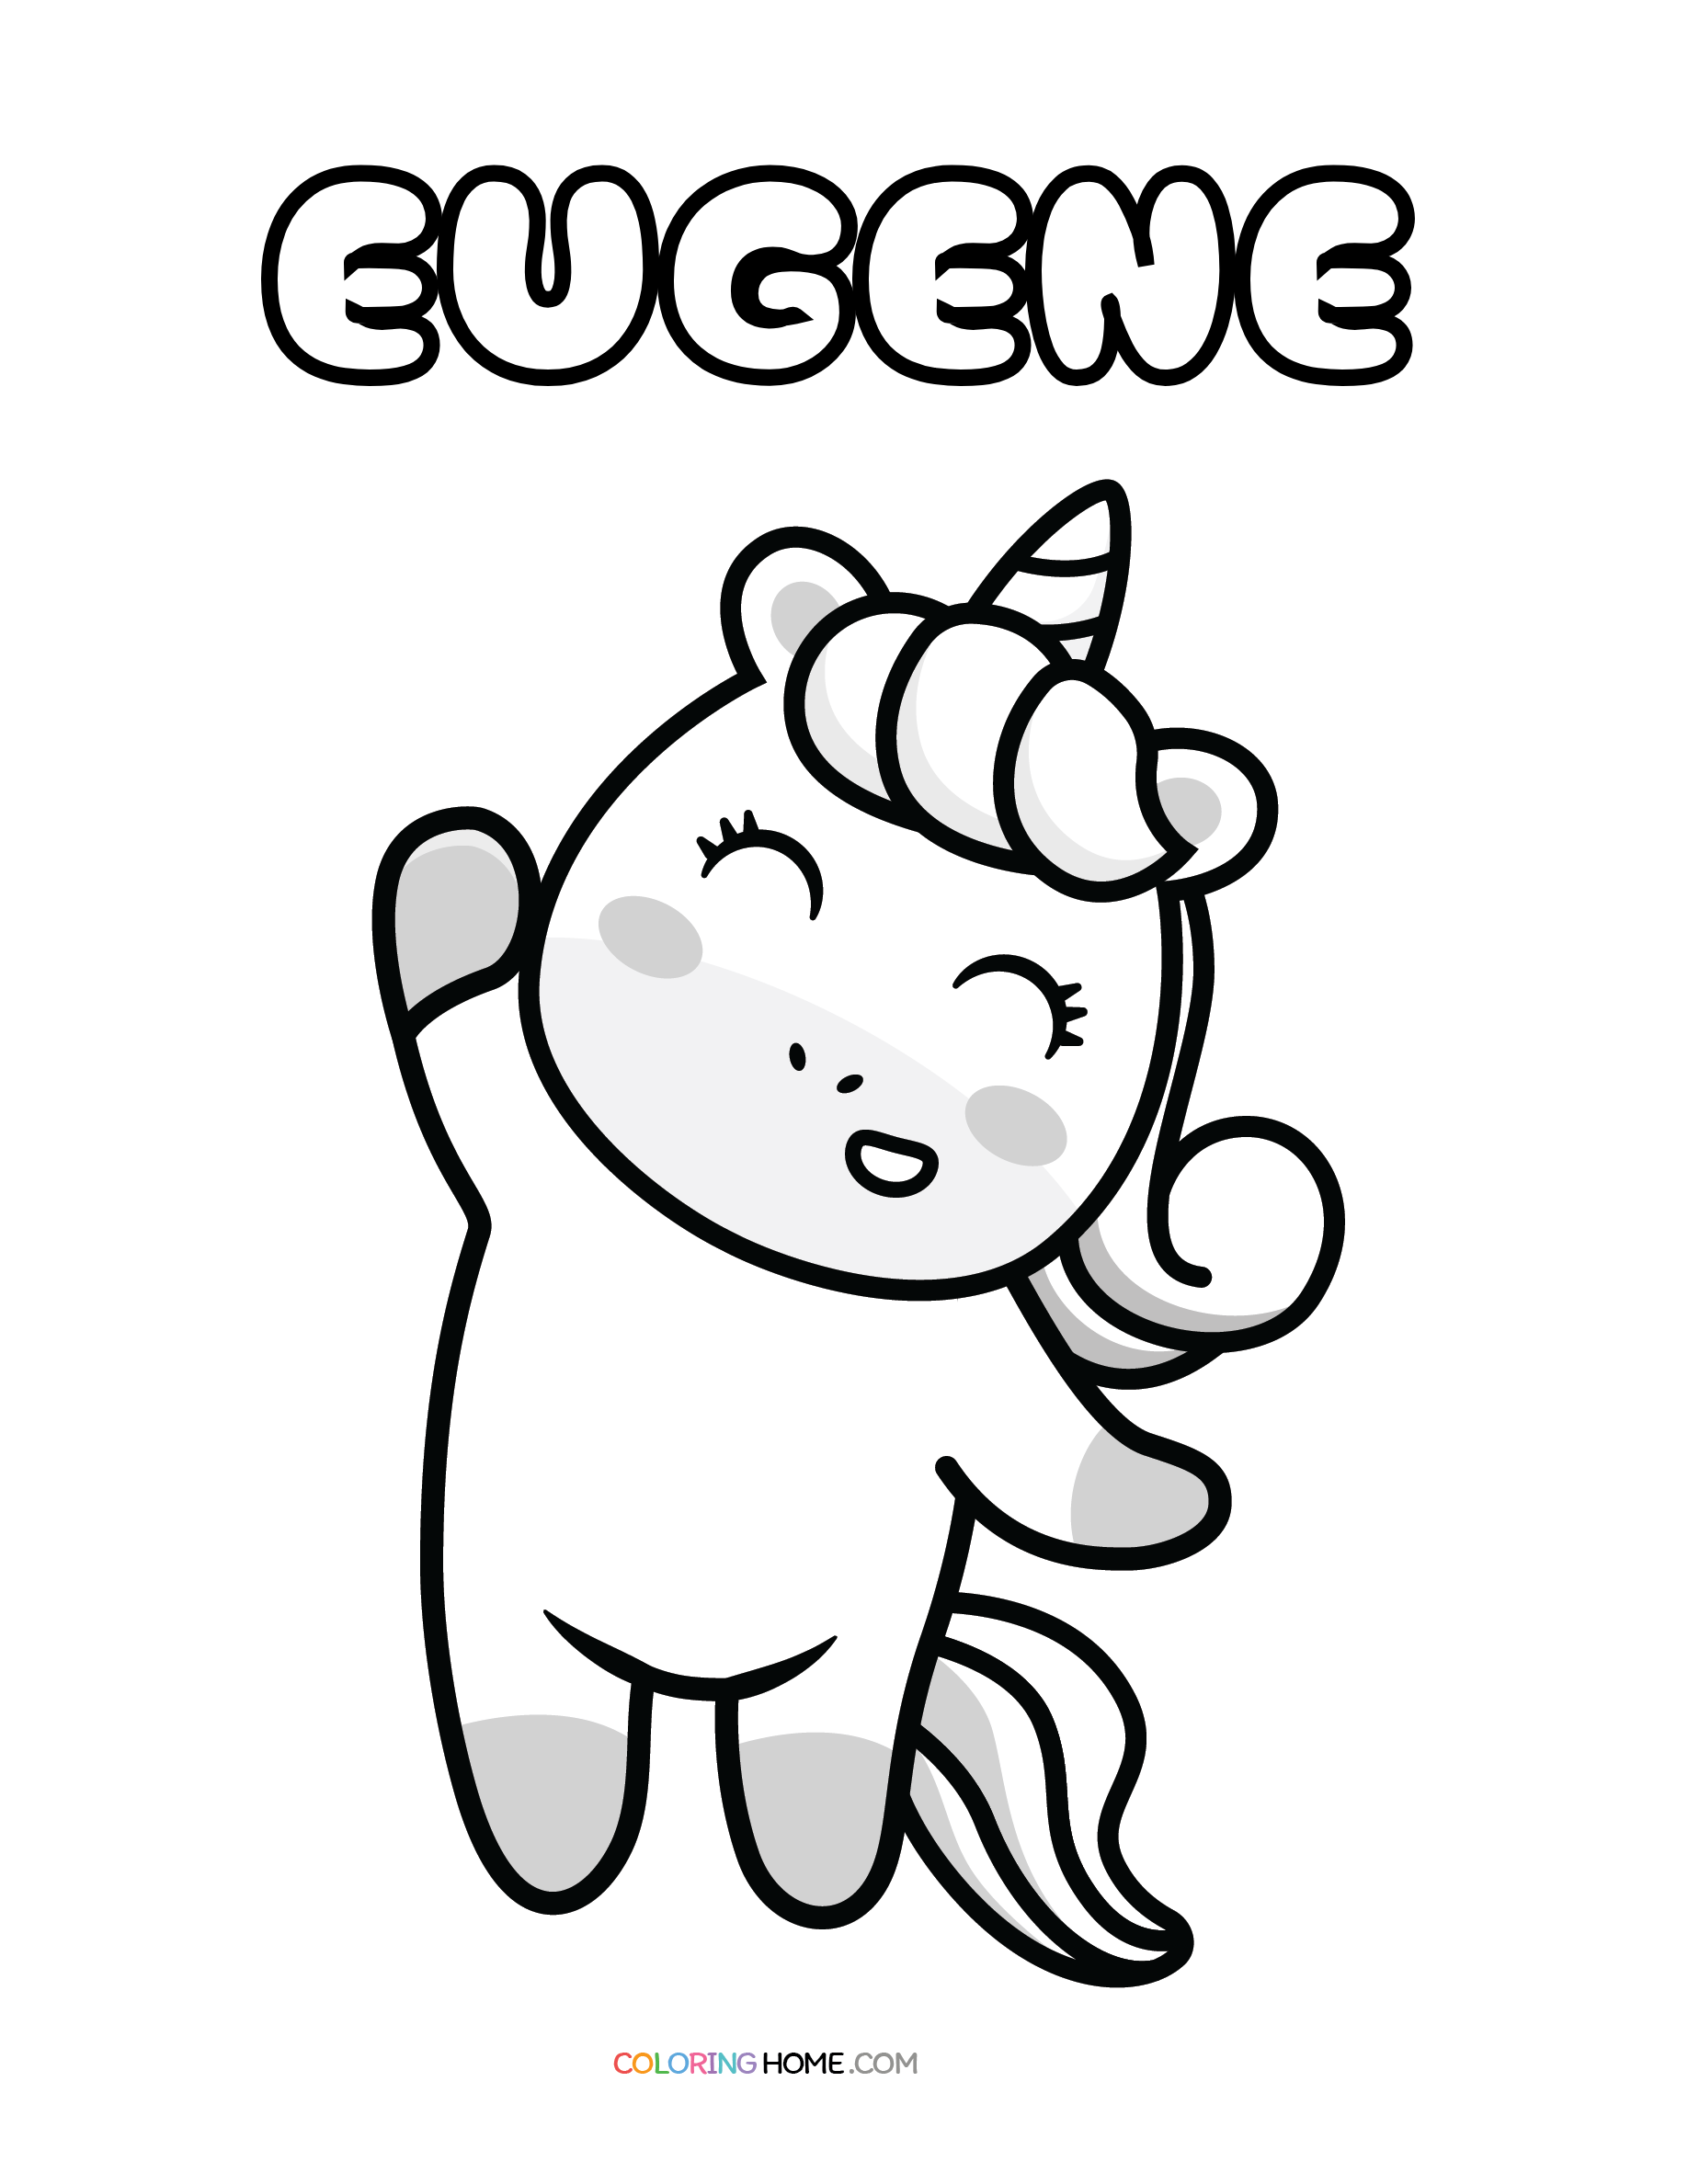 Eugene unicorn coloring page